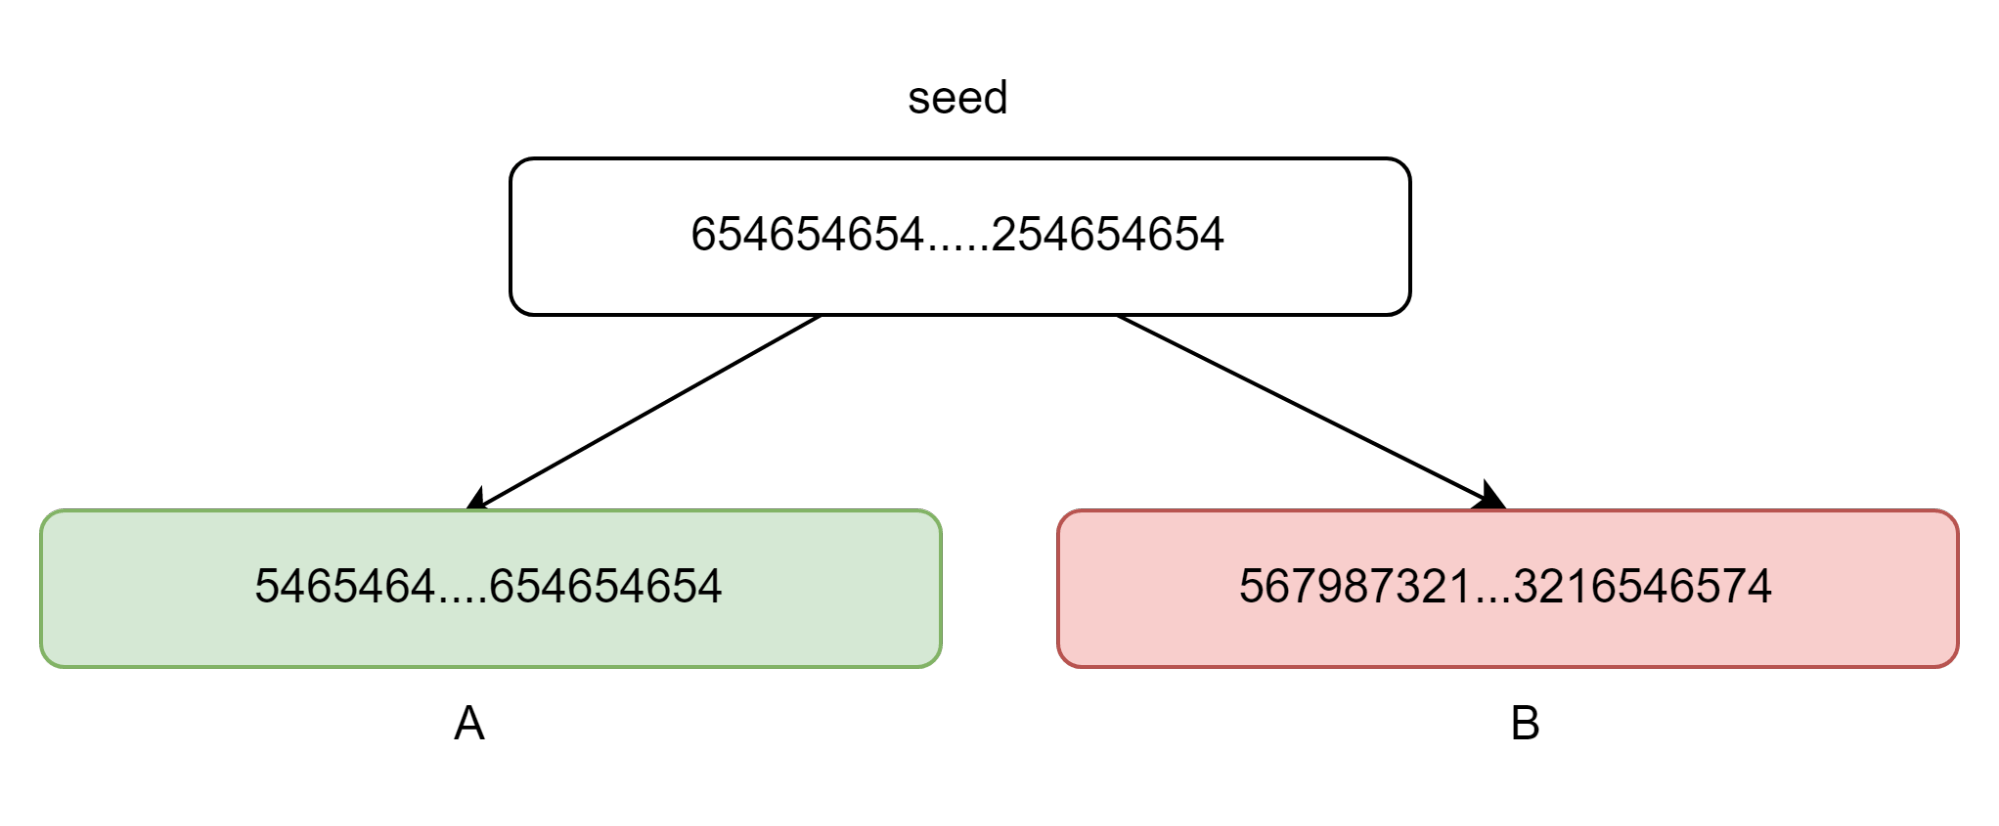 Imagem voltado para o conteúdo sobre rede blockchain, que mostra um número muito grande (chamado de seed), localizado no topo, gerando outros dois números indicados por flechas à direita e à esquerda: A (pintado de verde) e B (pintado de vermelho).